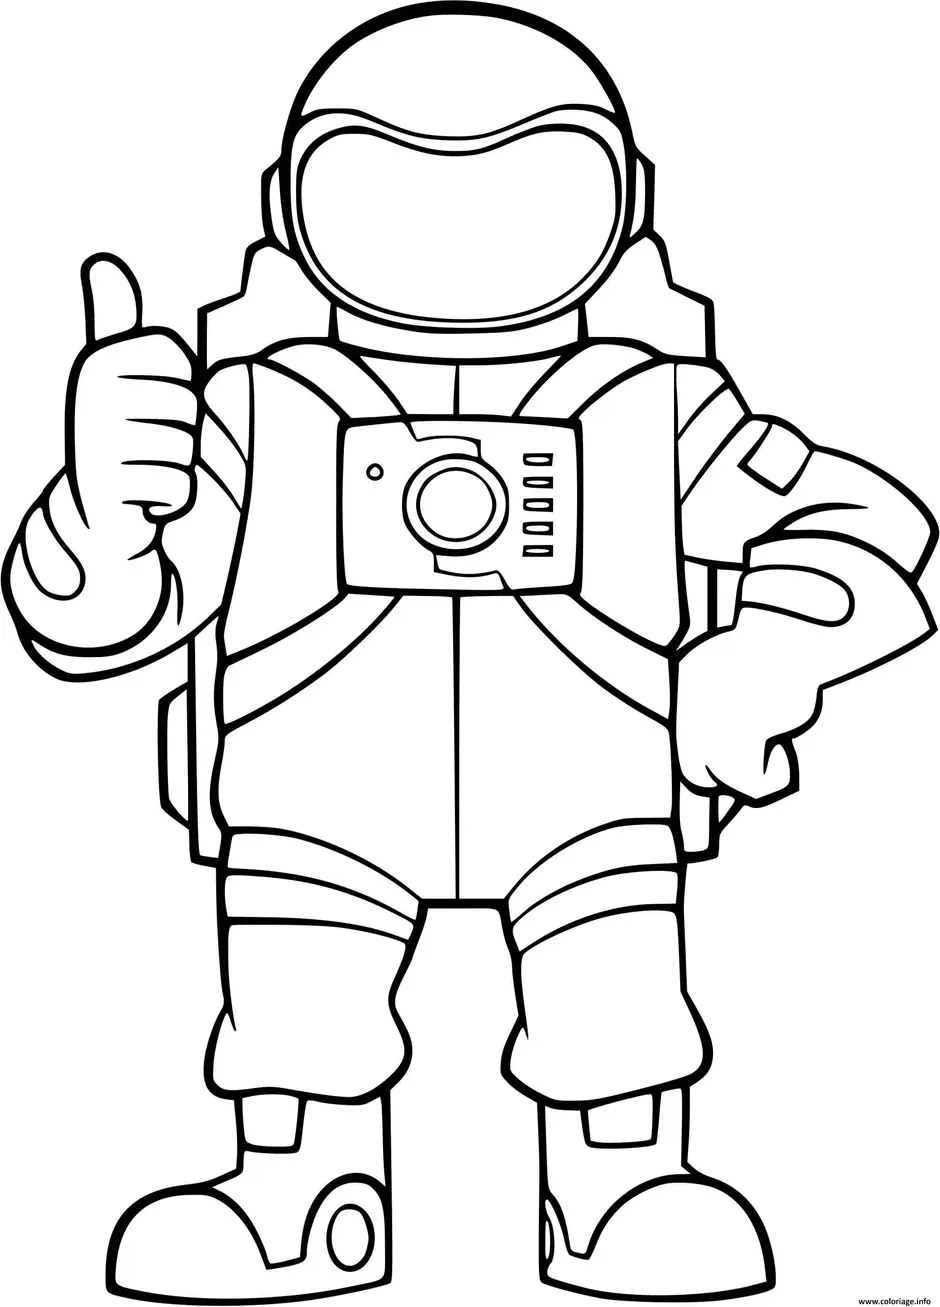 Шаблон космонавта для вырезания из бумаги распечатать. Космонавт раскраска для детей. Раскраска Космонавта в скафандре для детей. Космонавт раскраска для малышей. Скафандра для рисование.